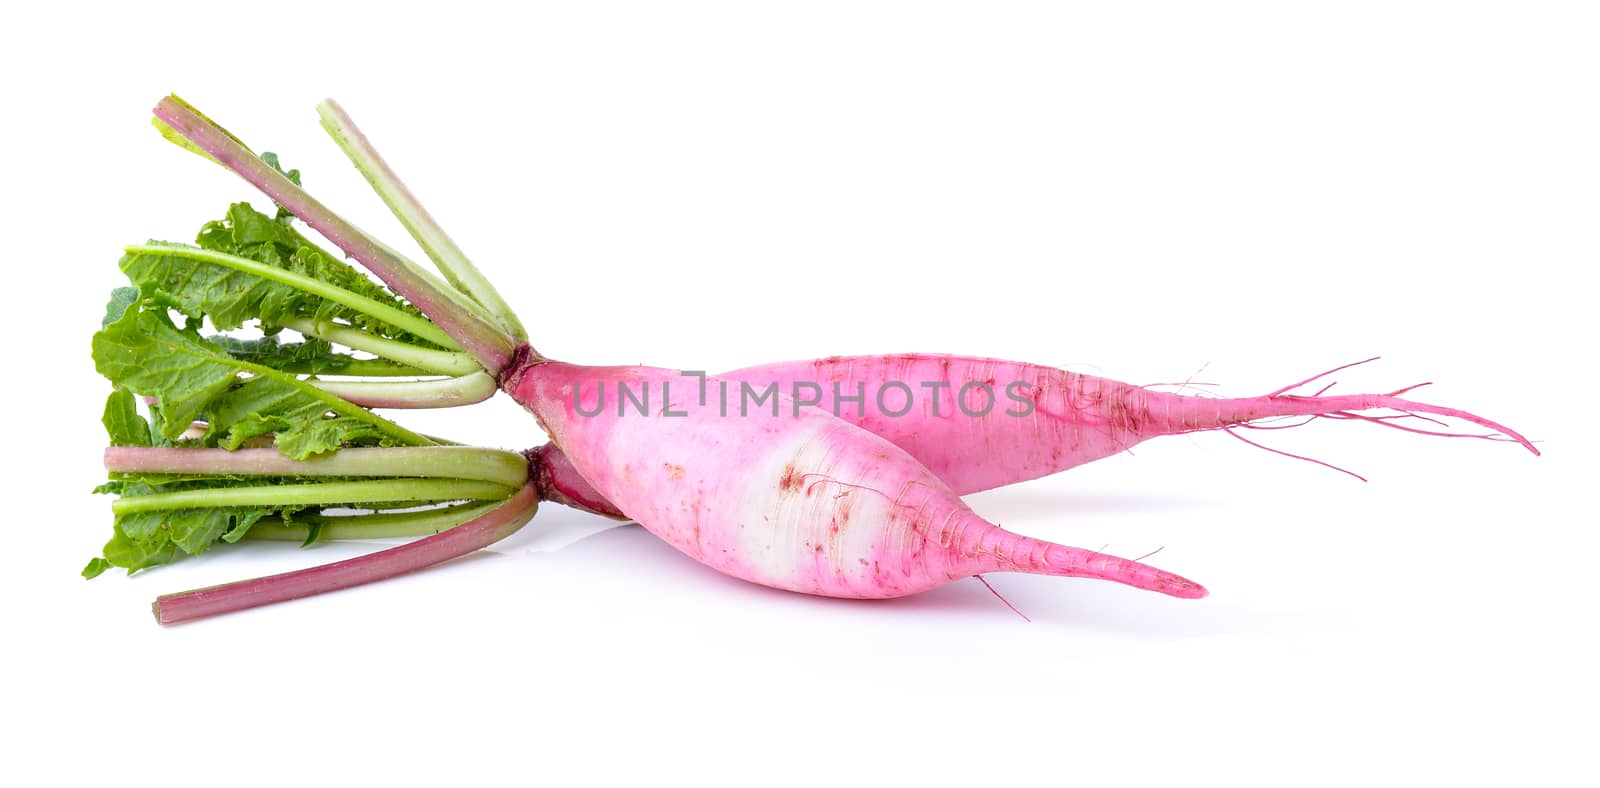  radishes isolated on white background by sommai